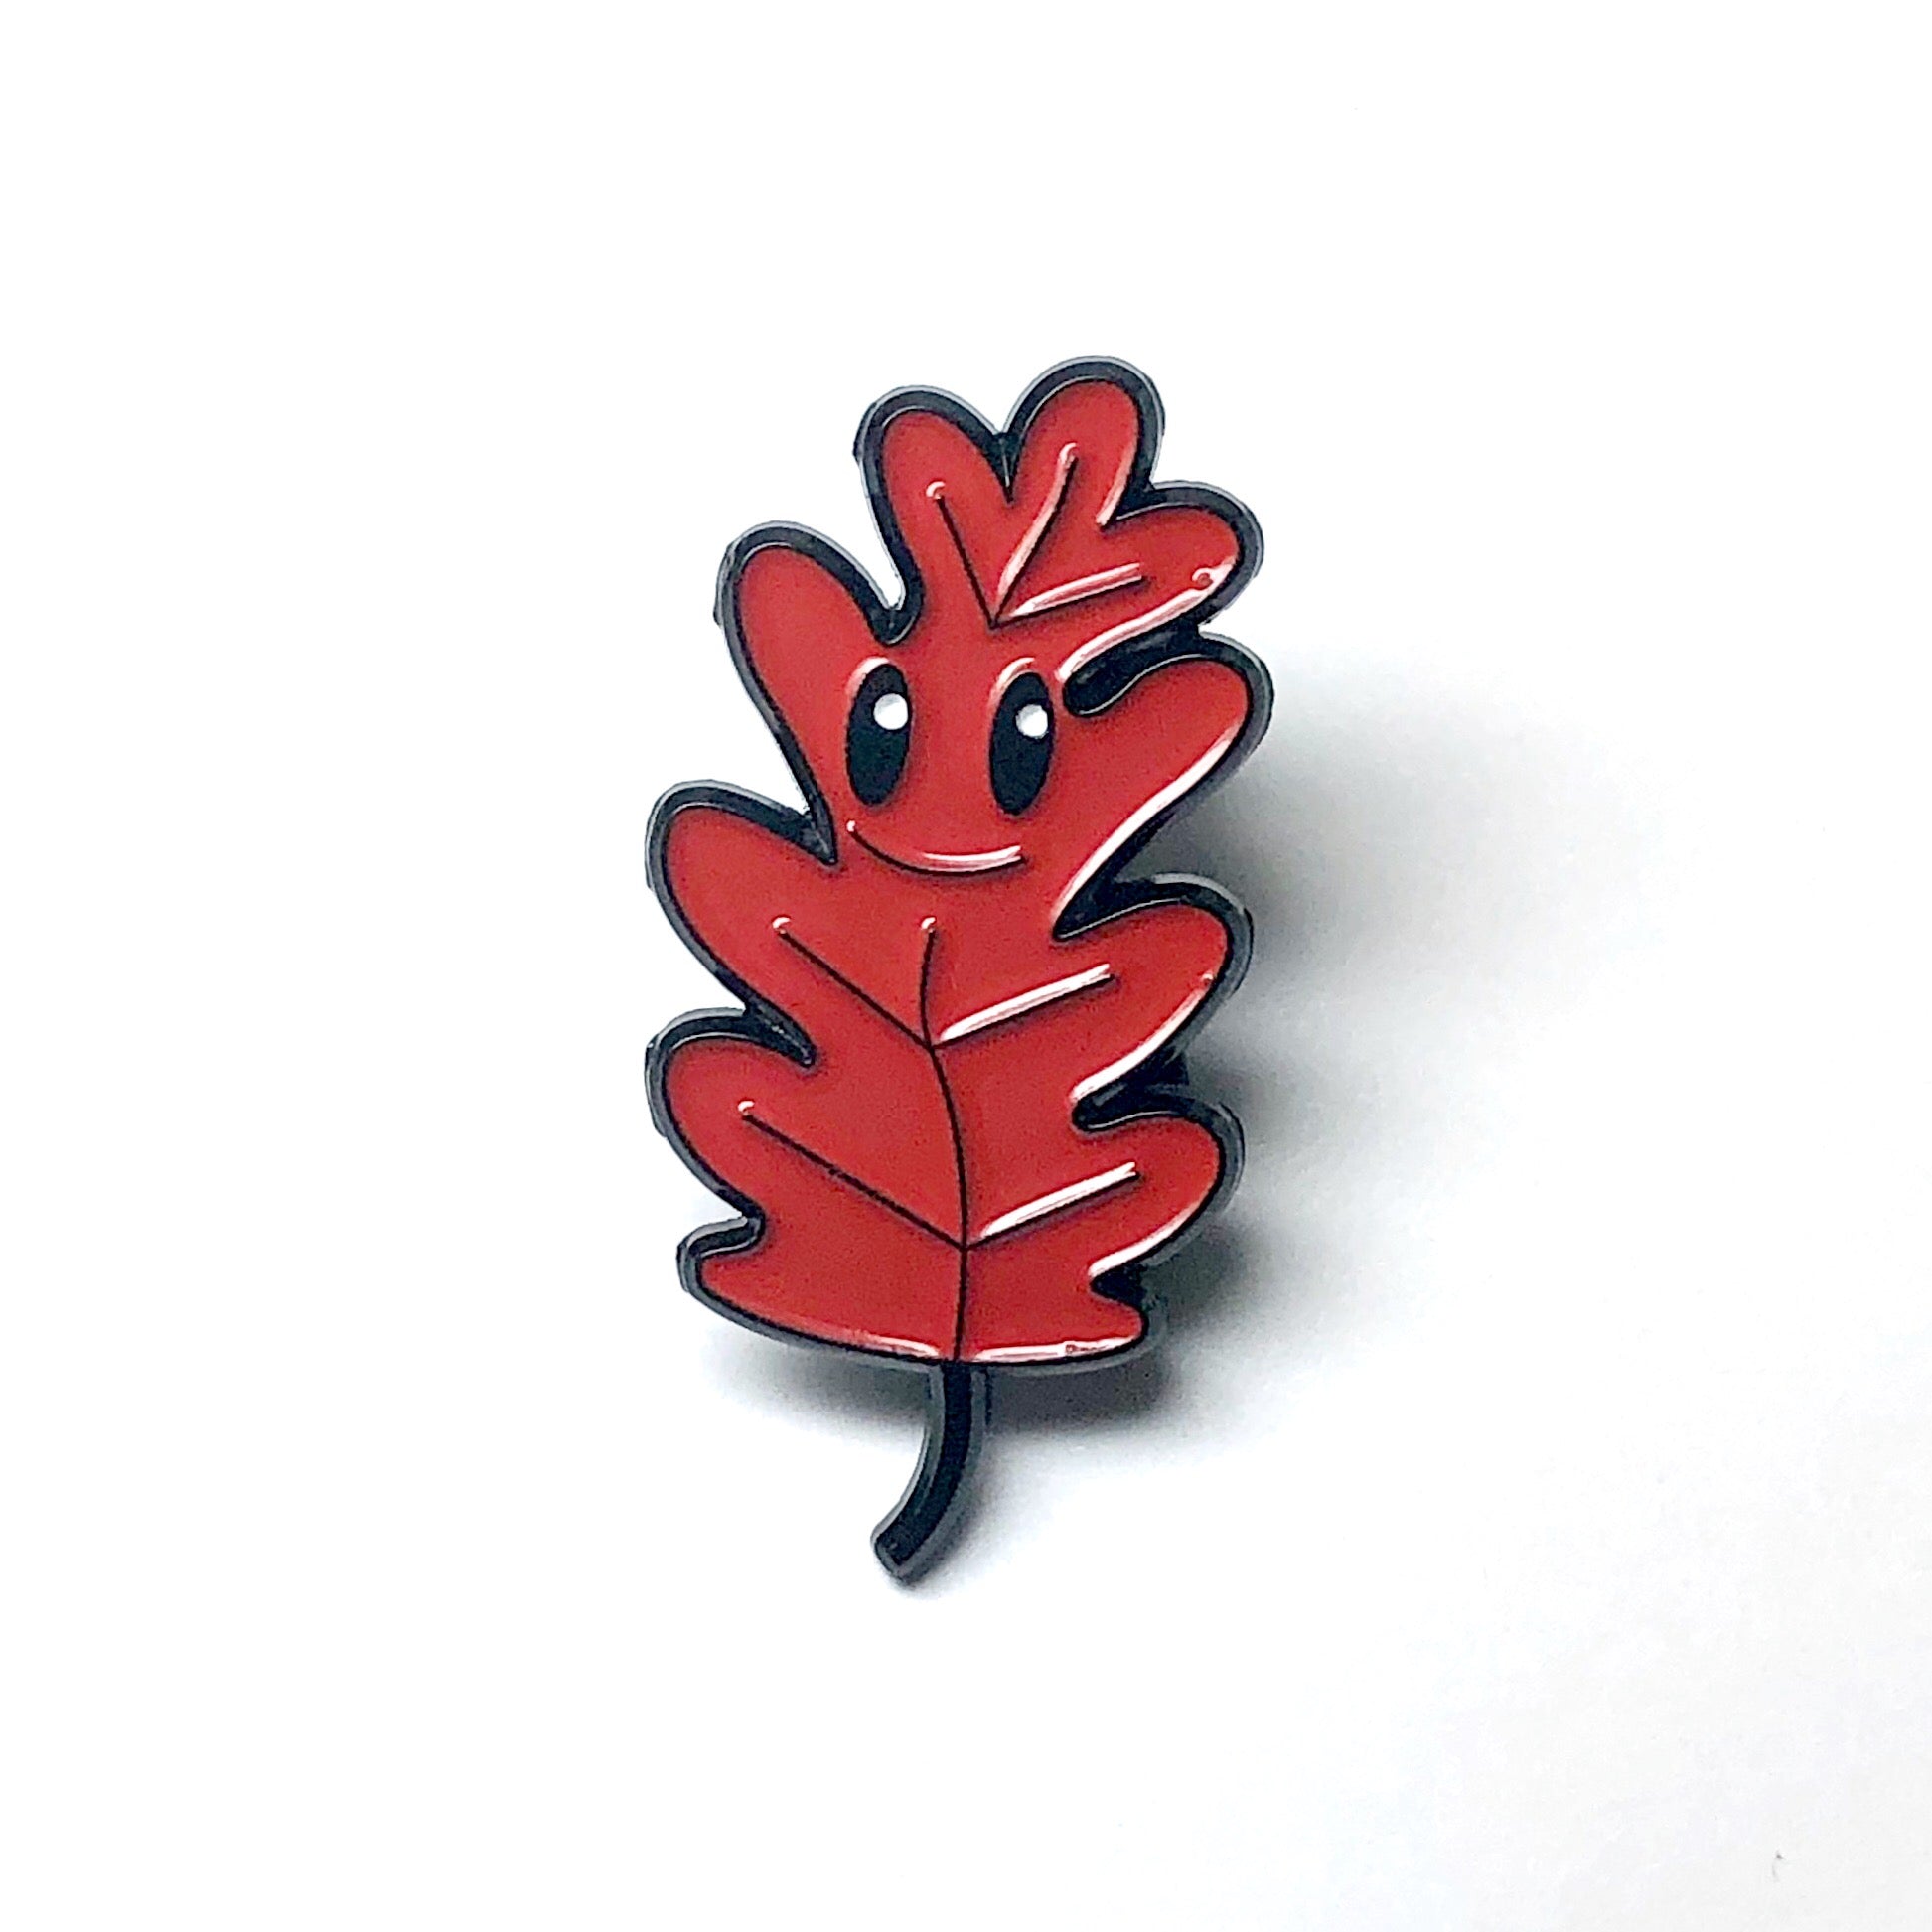 Red Oak Leaf Enamel Pin